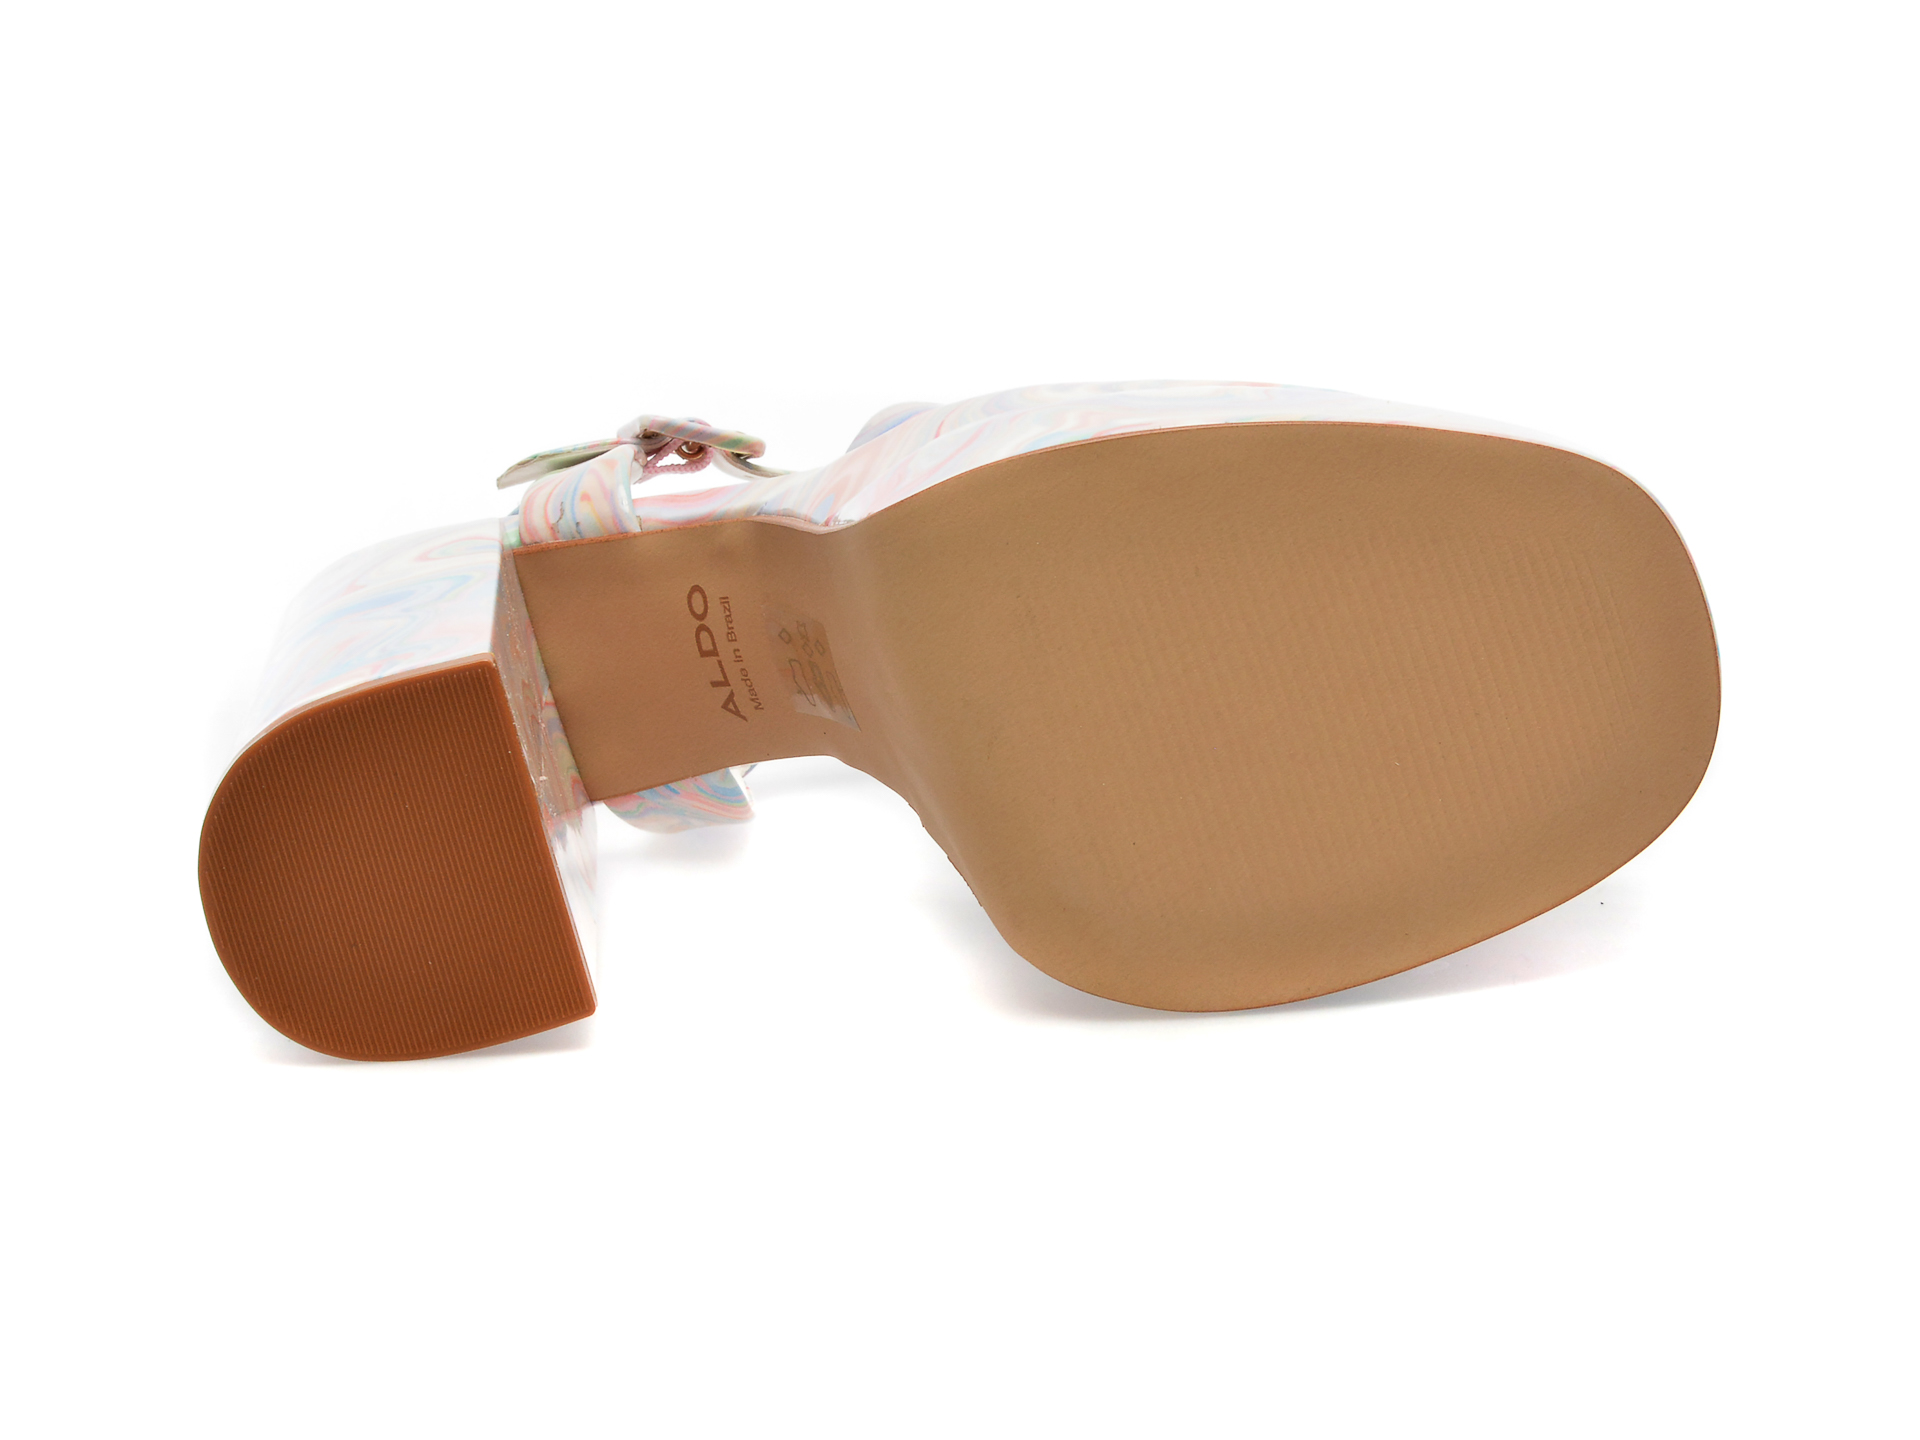 Sandale ALDO multicolor, GISELL963, din piele ecologica